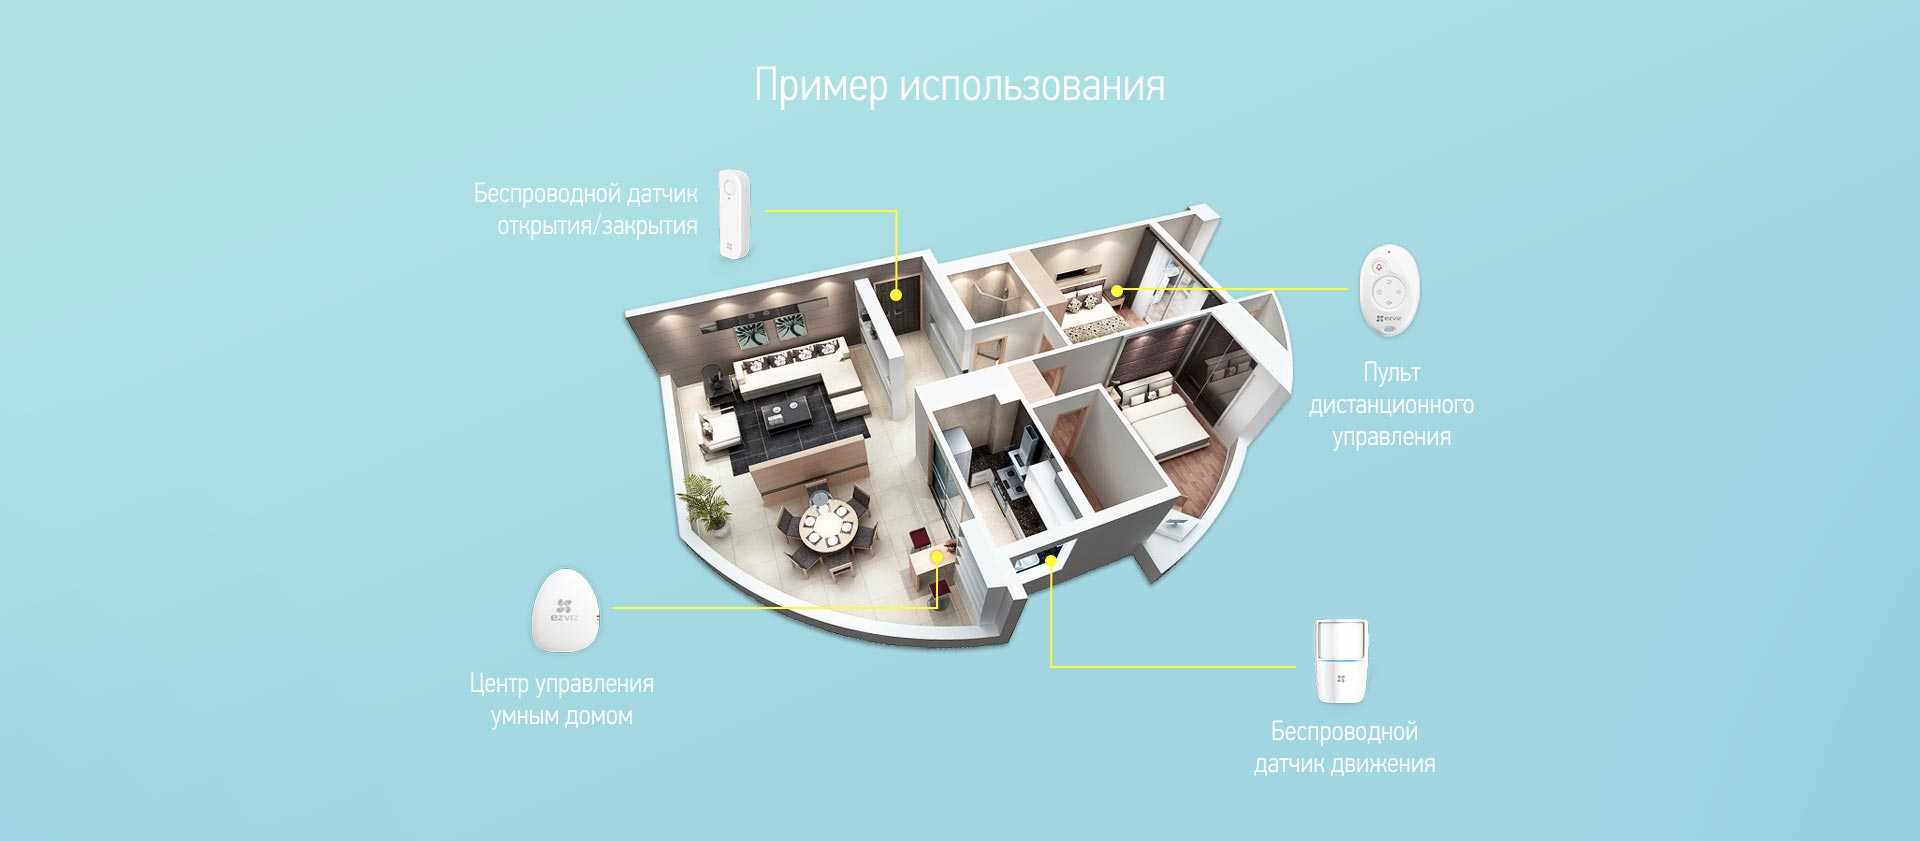 Дом детектор. EZVIZ а1 набор (BS-113a). Система управления умный дом датчики. Умный дом. Комплект устройств для умного дома.